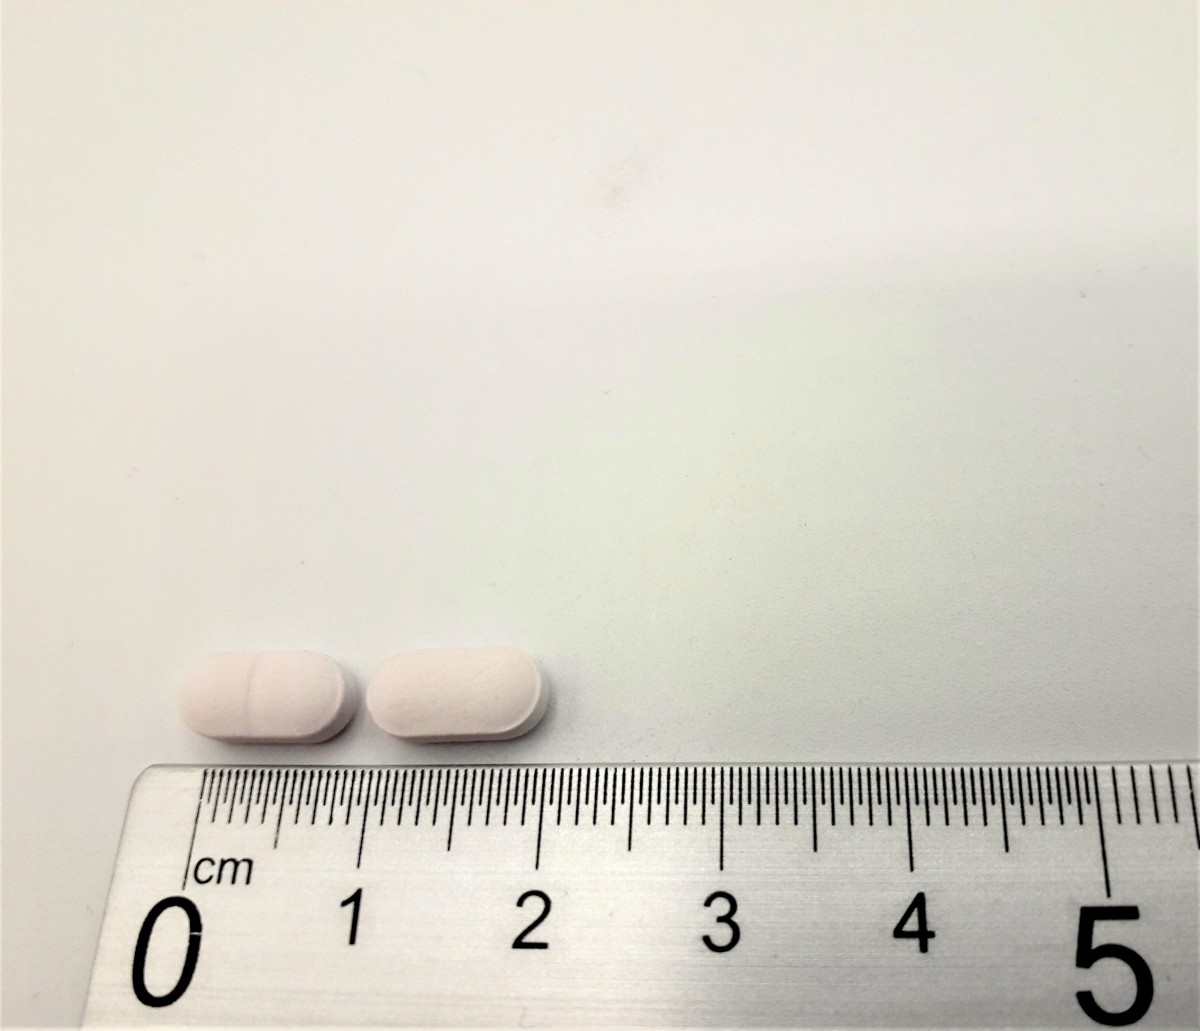 TERAZOSINA NORMON 5 mg COMPRIMIDOS EFG, 30 comprimidos fotografía de la forma farmacéutica.